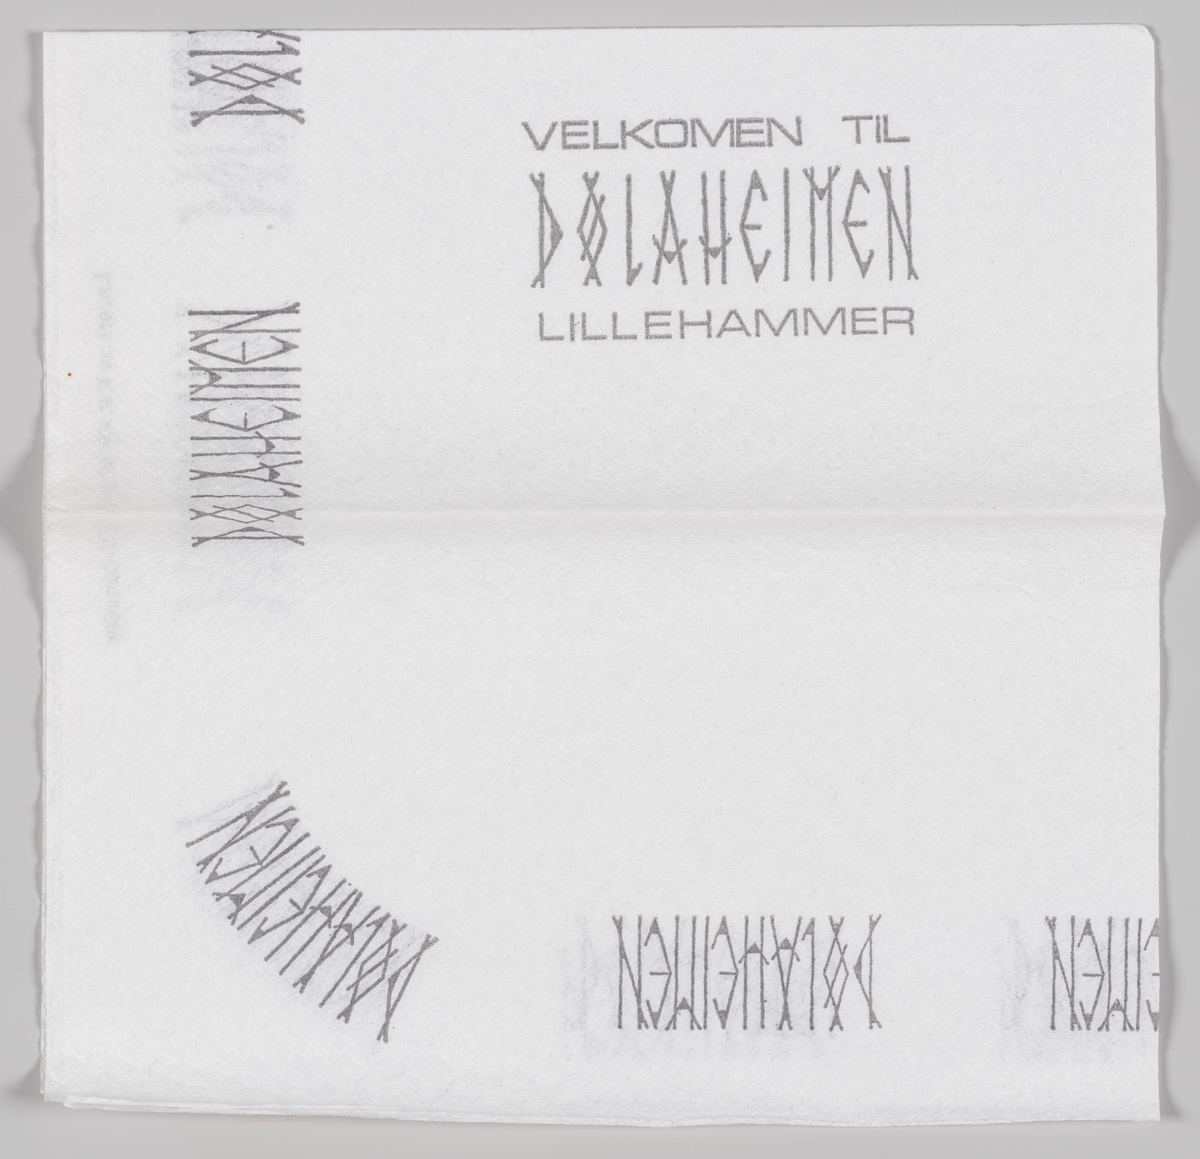 En reklametekst for Dølaheimen hotell og kafeteria på Lillehammer.

Samme tekst på MIA.00007-004-0140.